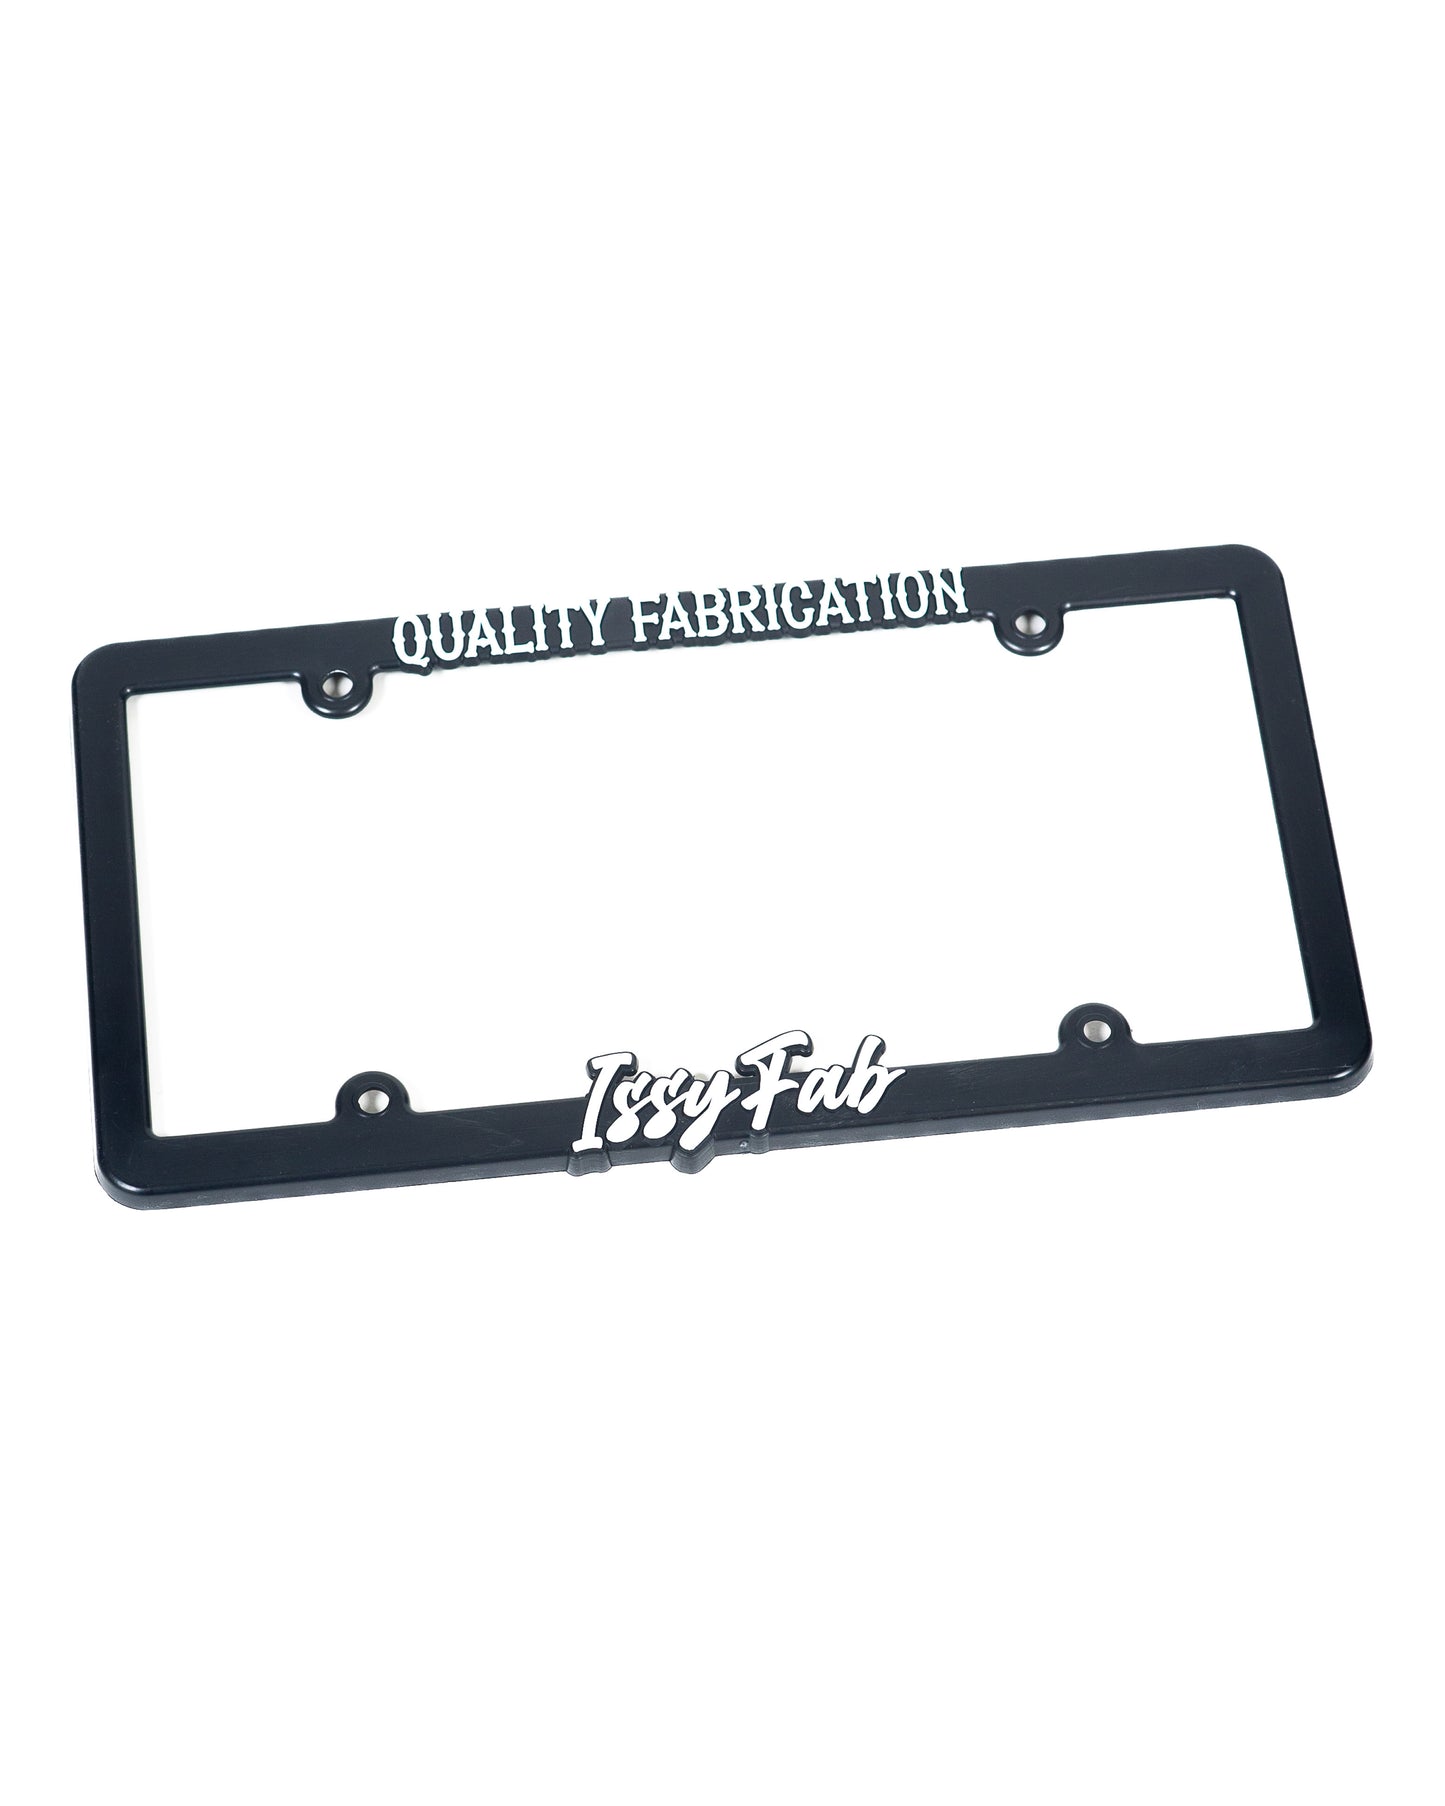 Issyfab Plate Frames